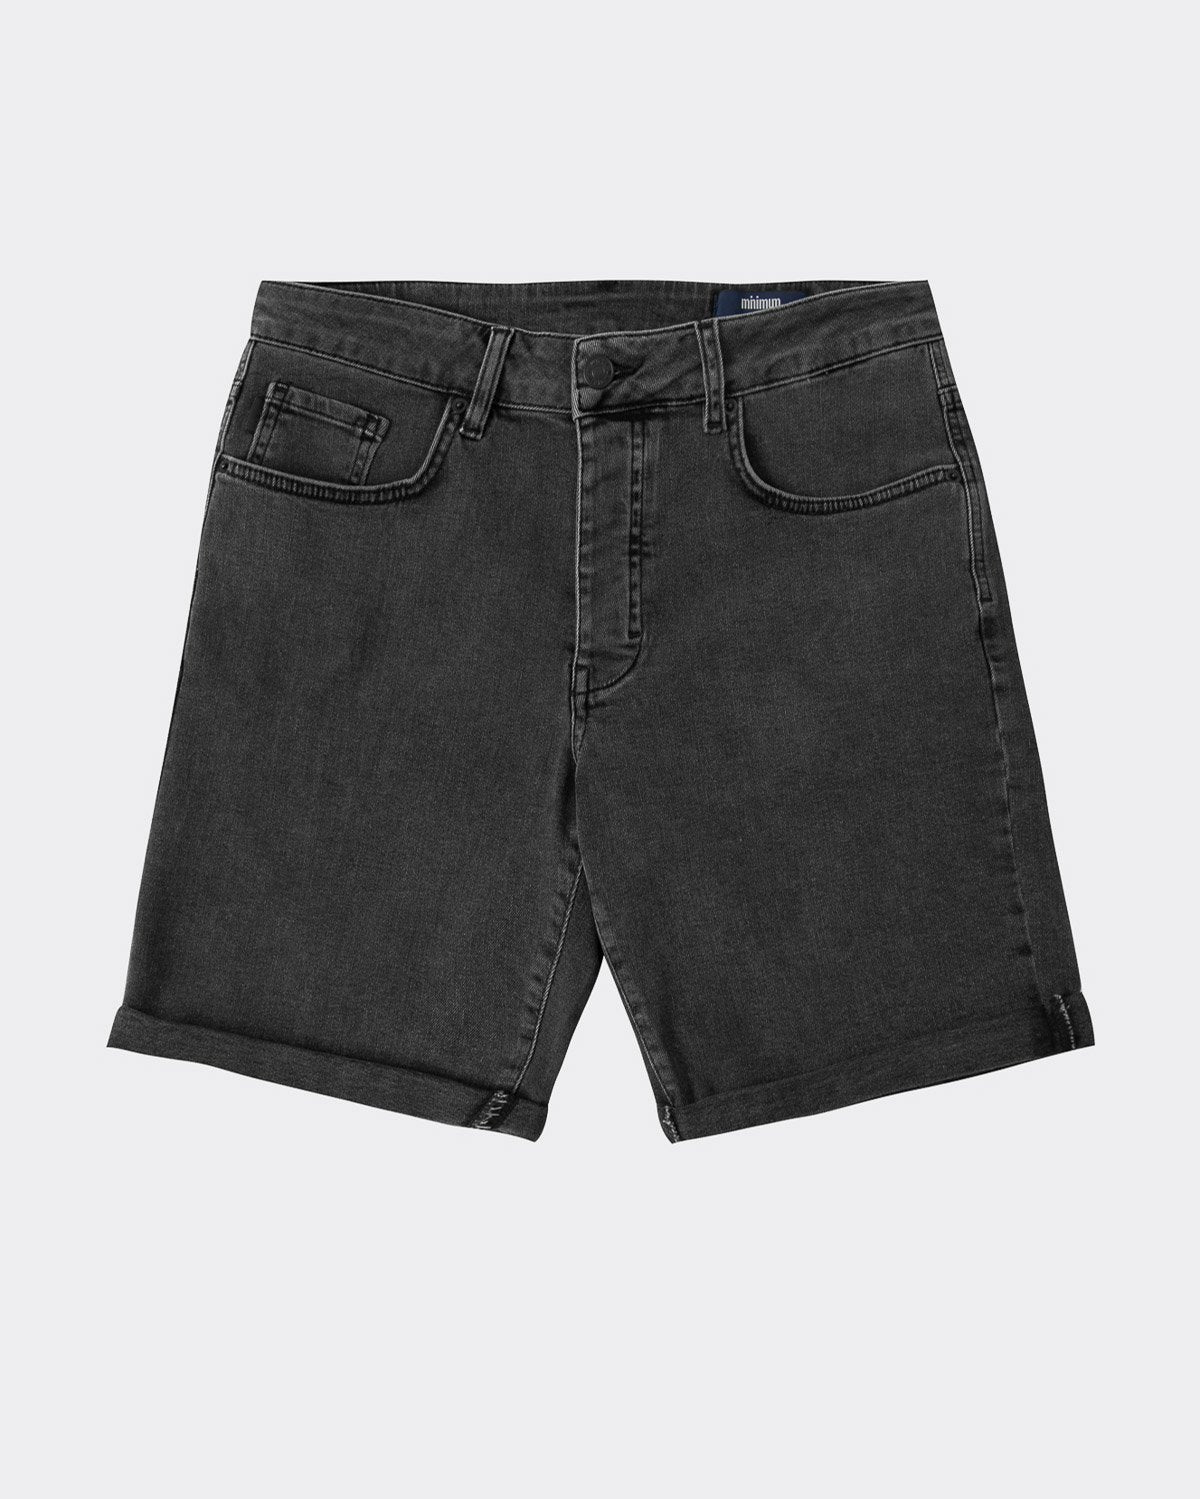 Samden M346 Shorts